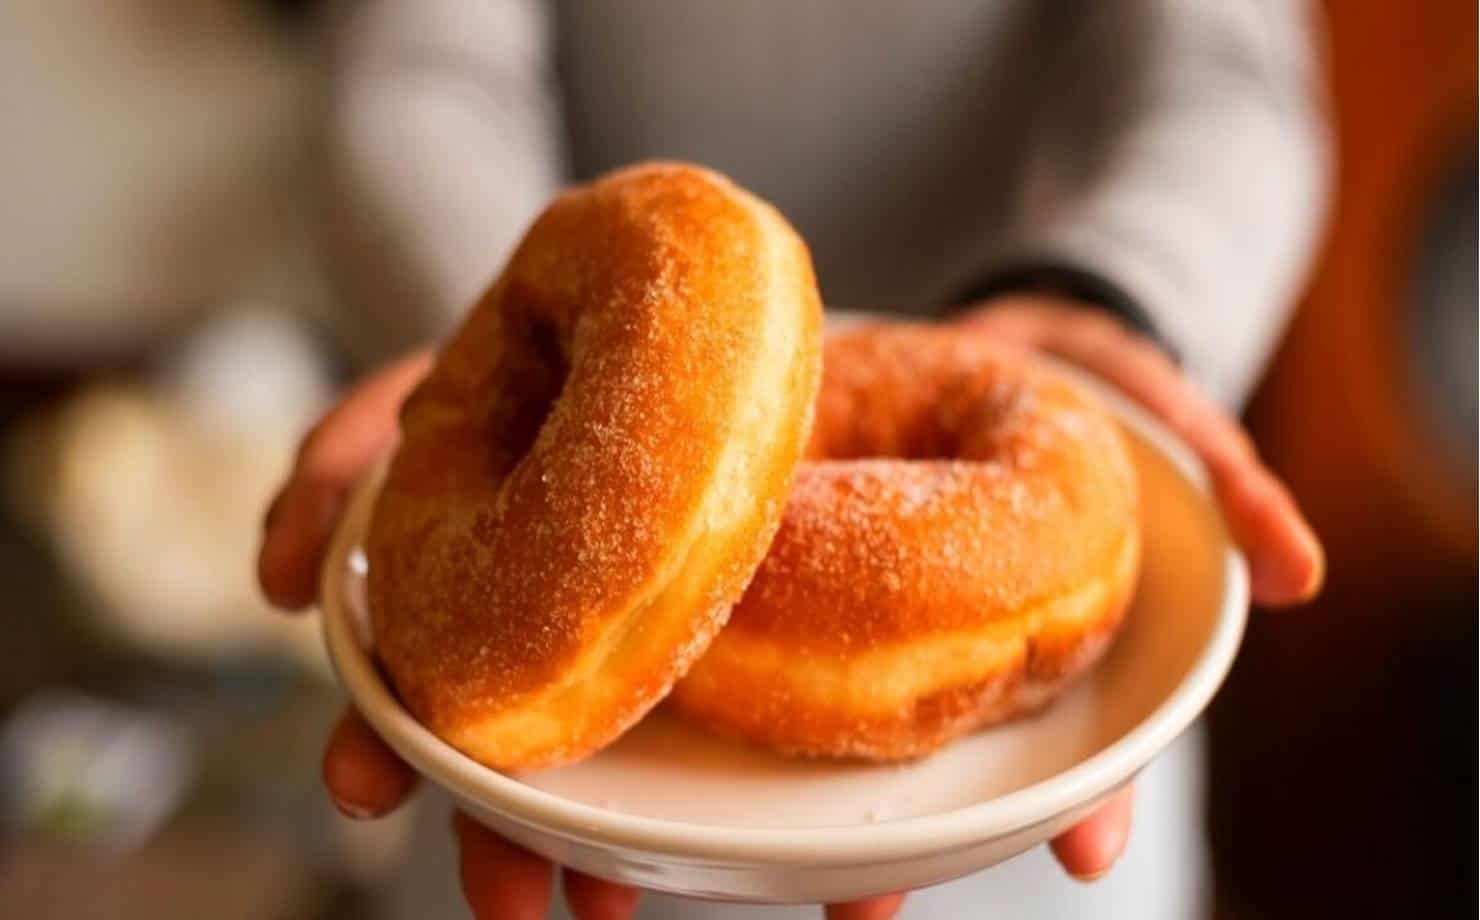 Acompanhe o seu café da manhã com estes donuts recheados 